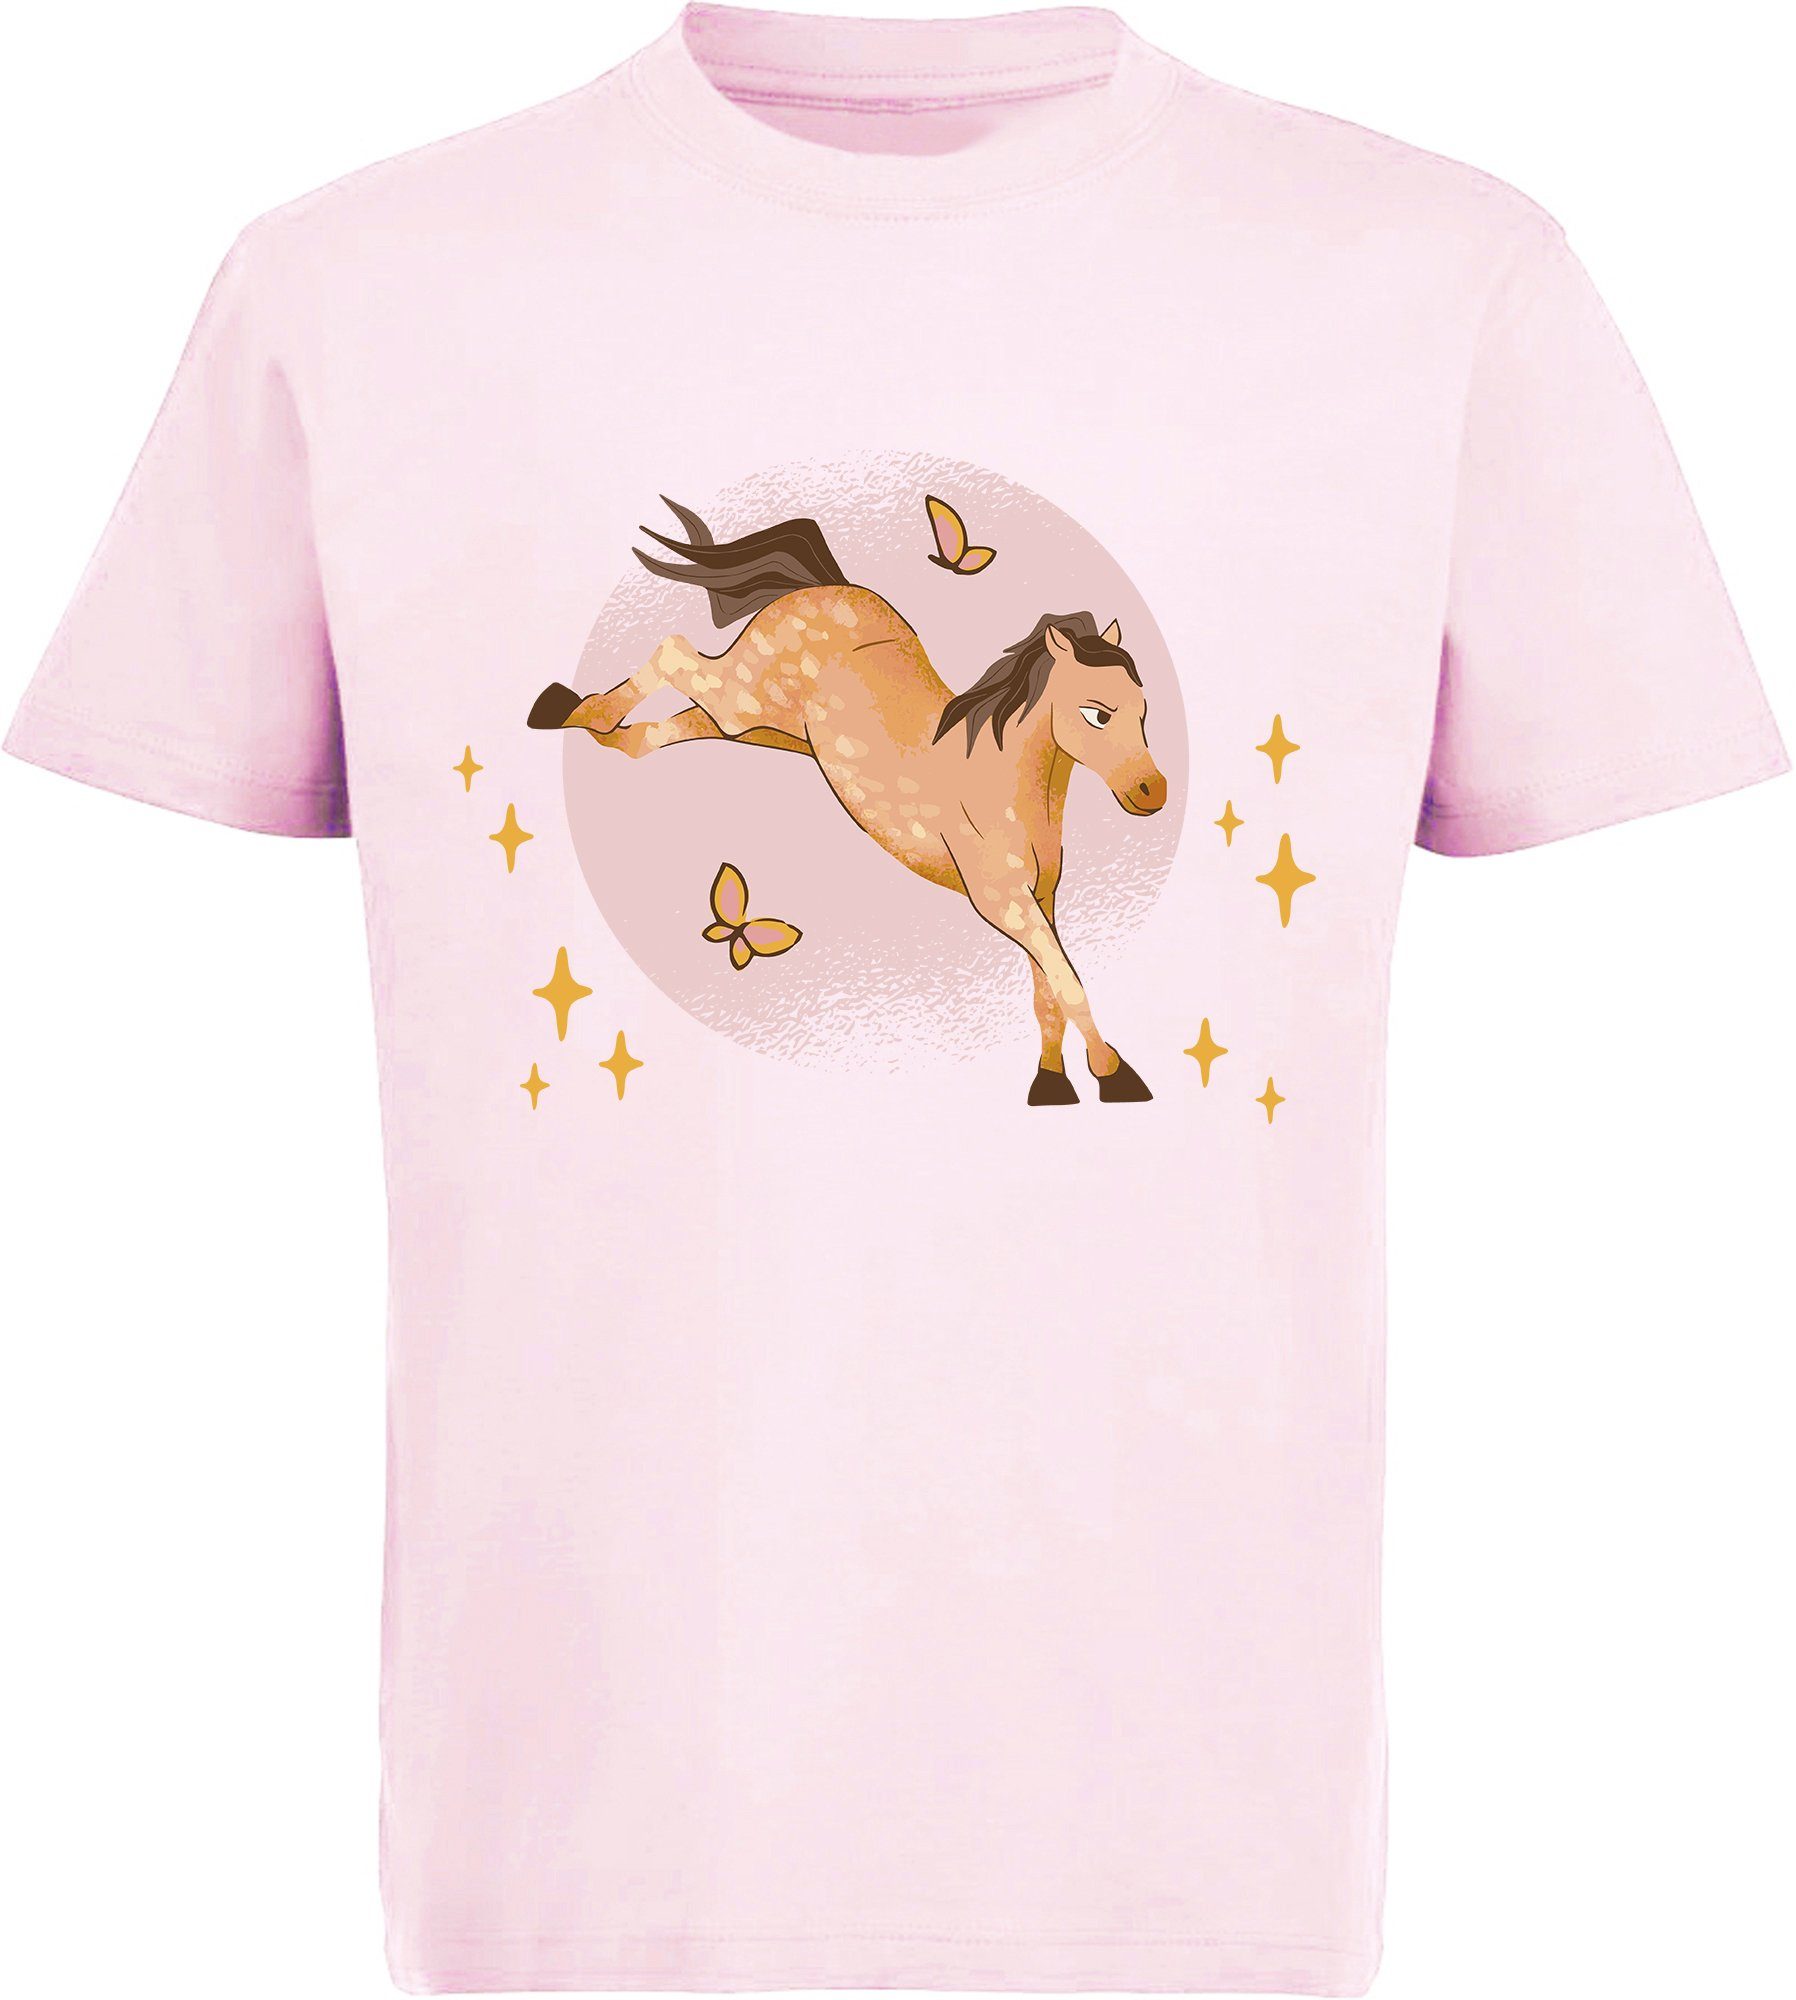 MyDesign24 Print-Shirt bedrucktes Mädchen T-Shirt austretendes Pferd und Schmetterlinge Baumwollshirt mit Aufdruck, i157 rosa